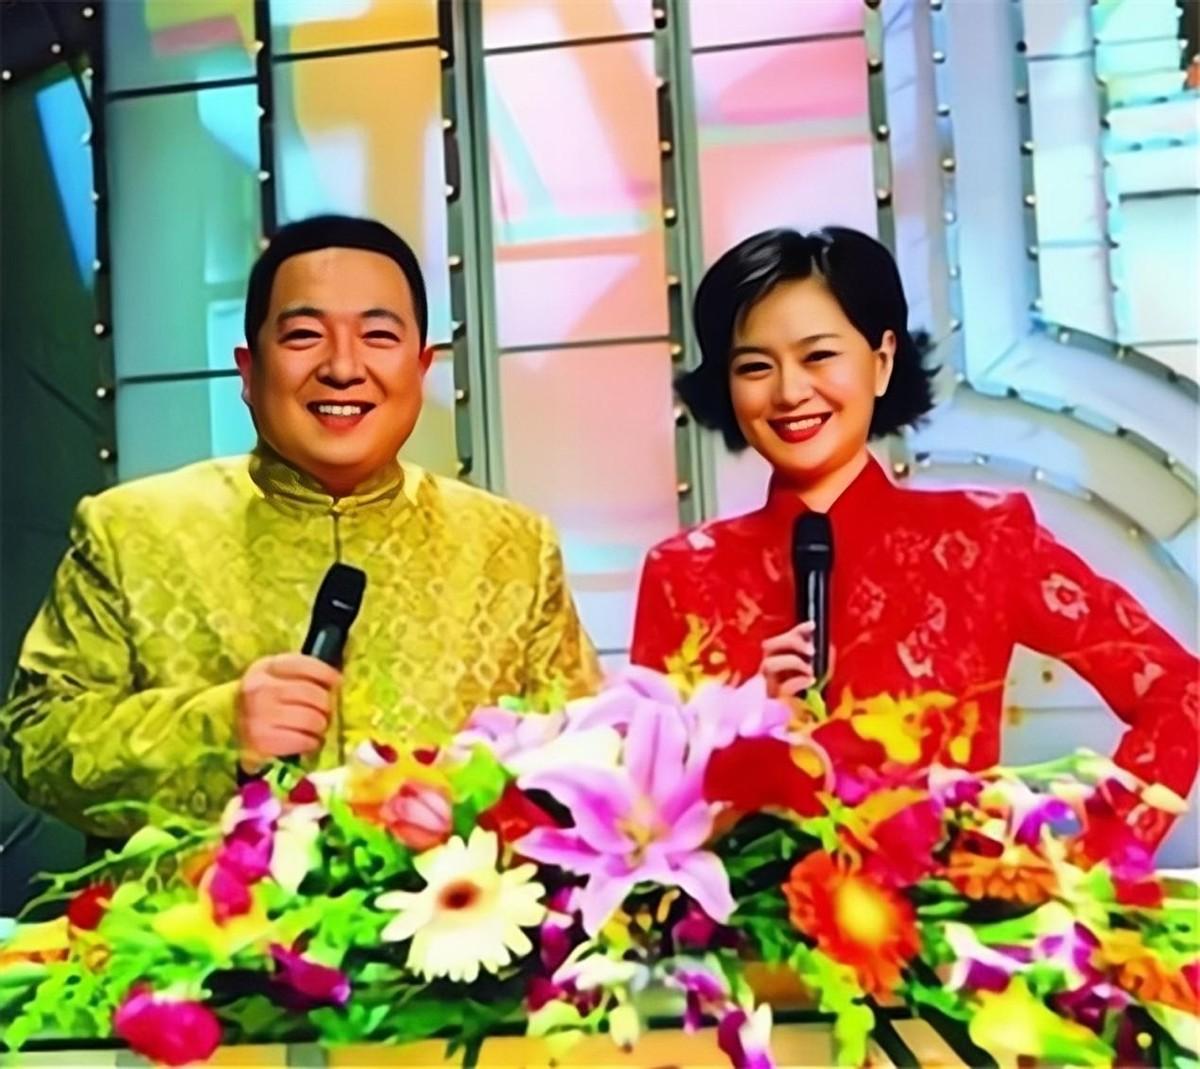 后来央视推出《大风车》她和董浩搭档成为主持人,同时担任制片